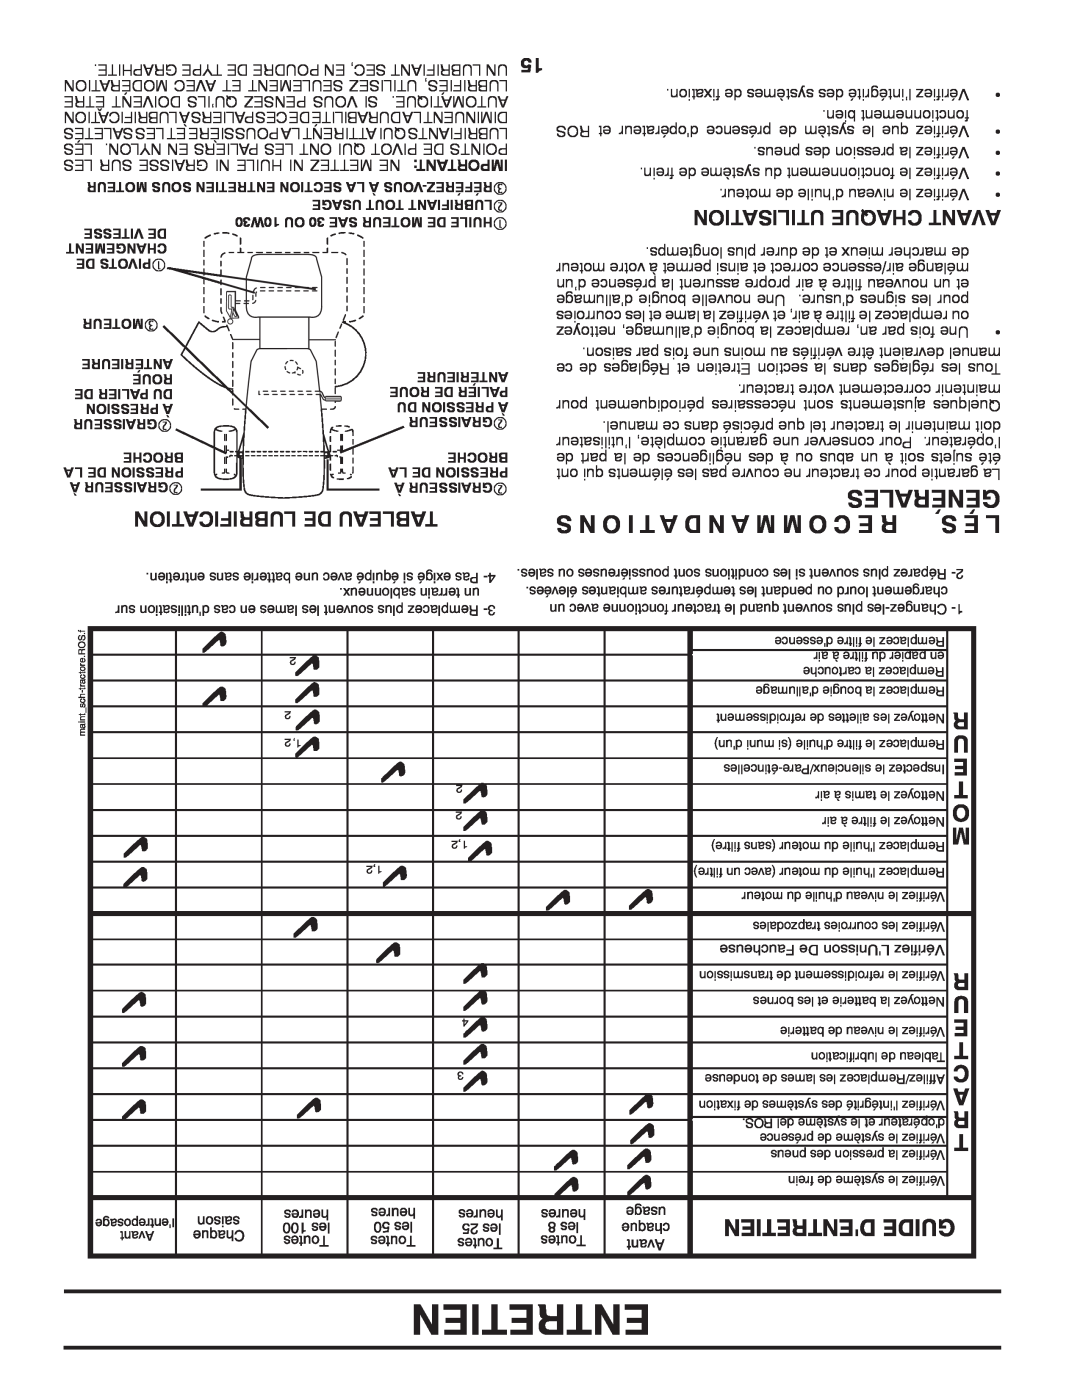 Poulan 96042003505 manual Entretien, S N O I T A D N A M M O C E R, Générales, S E L, Lubrification De Tableau 